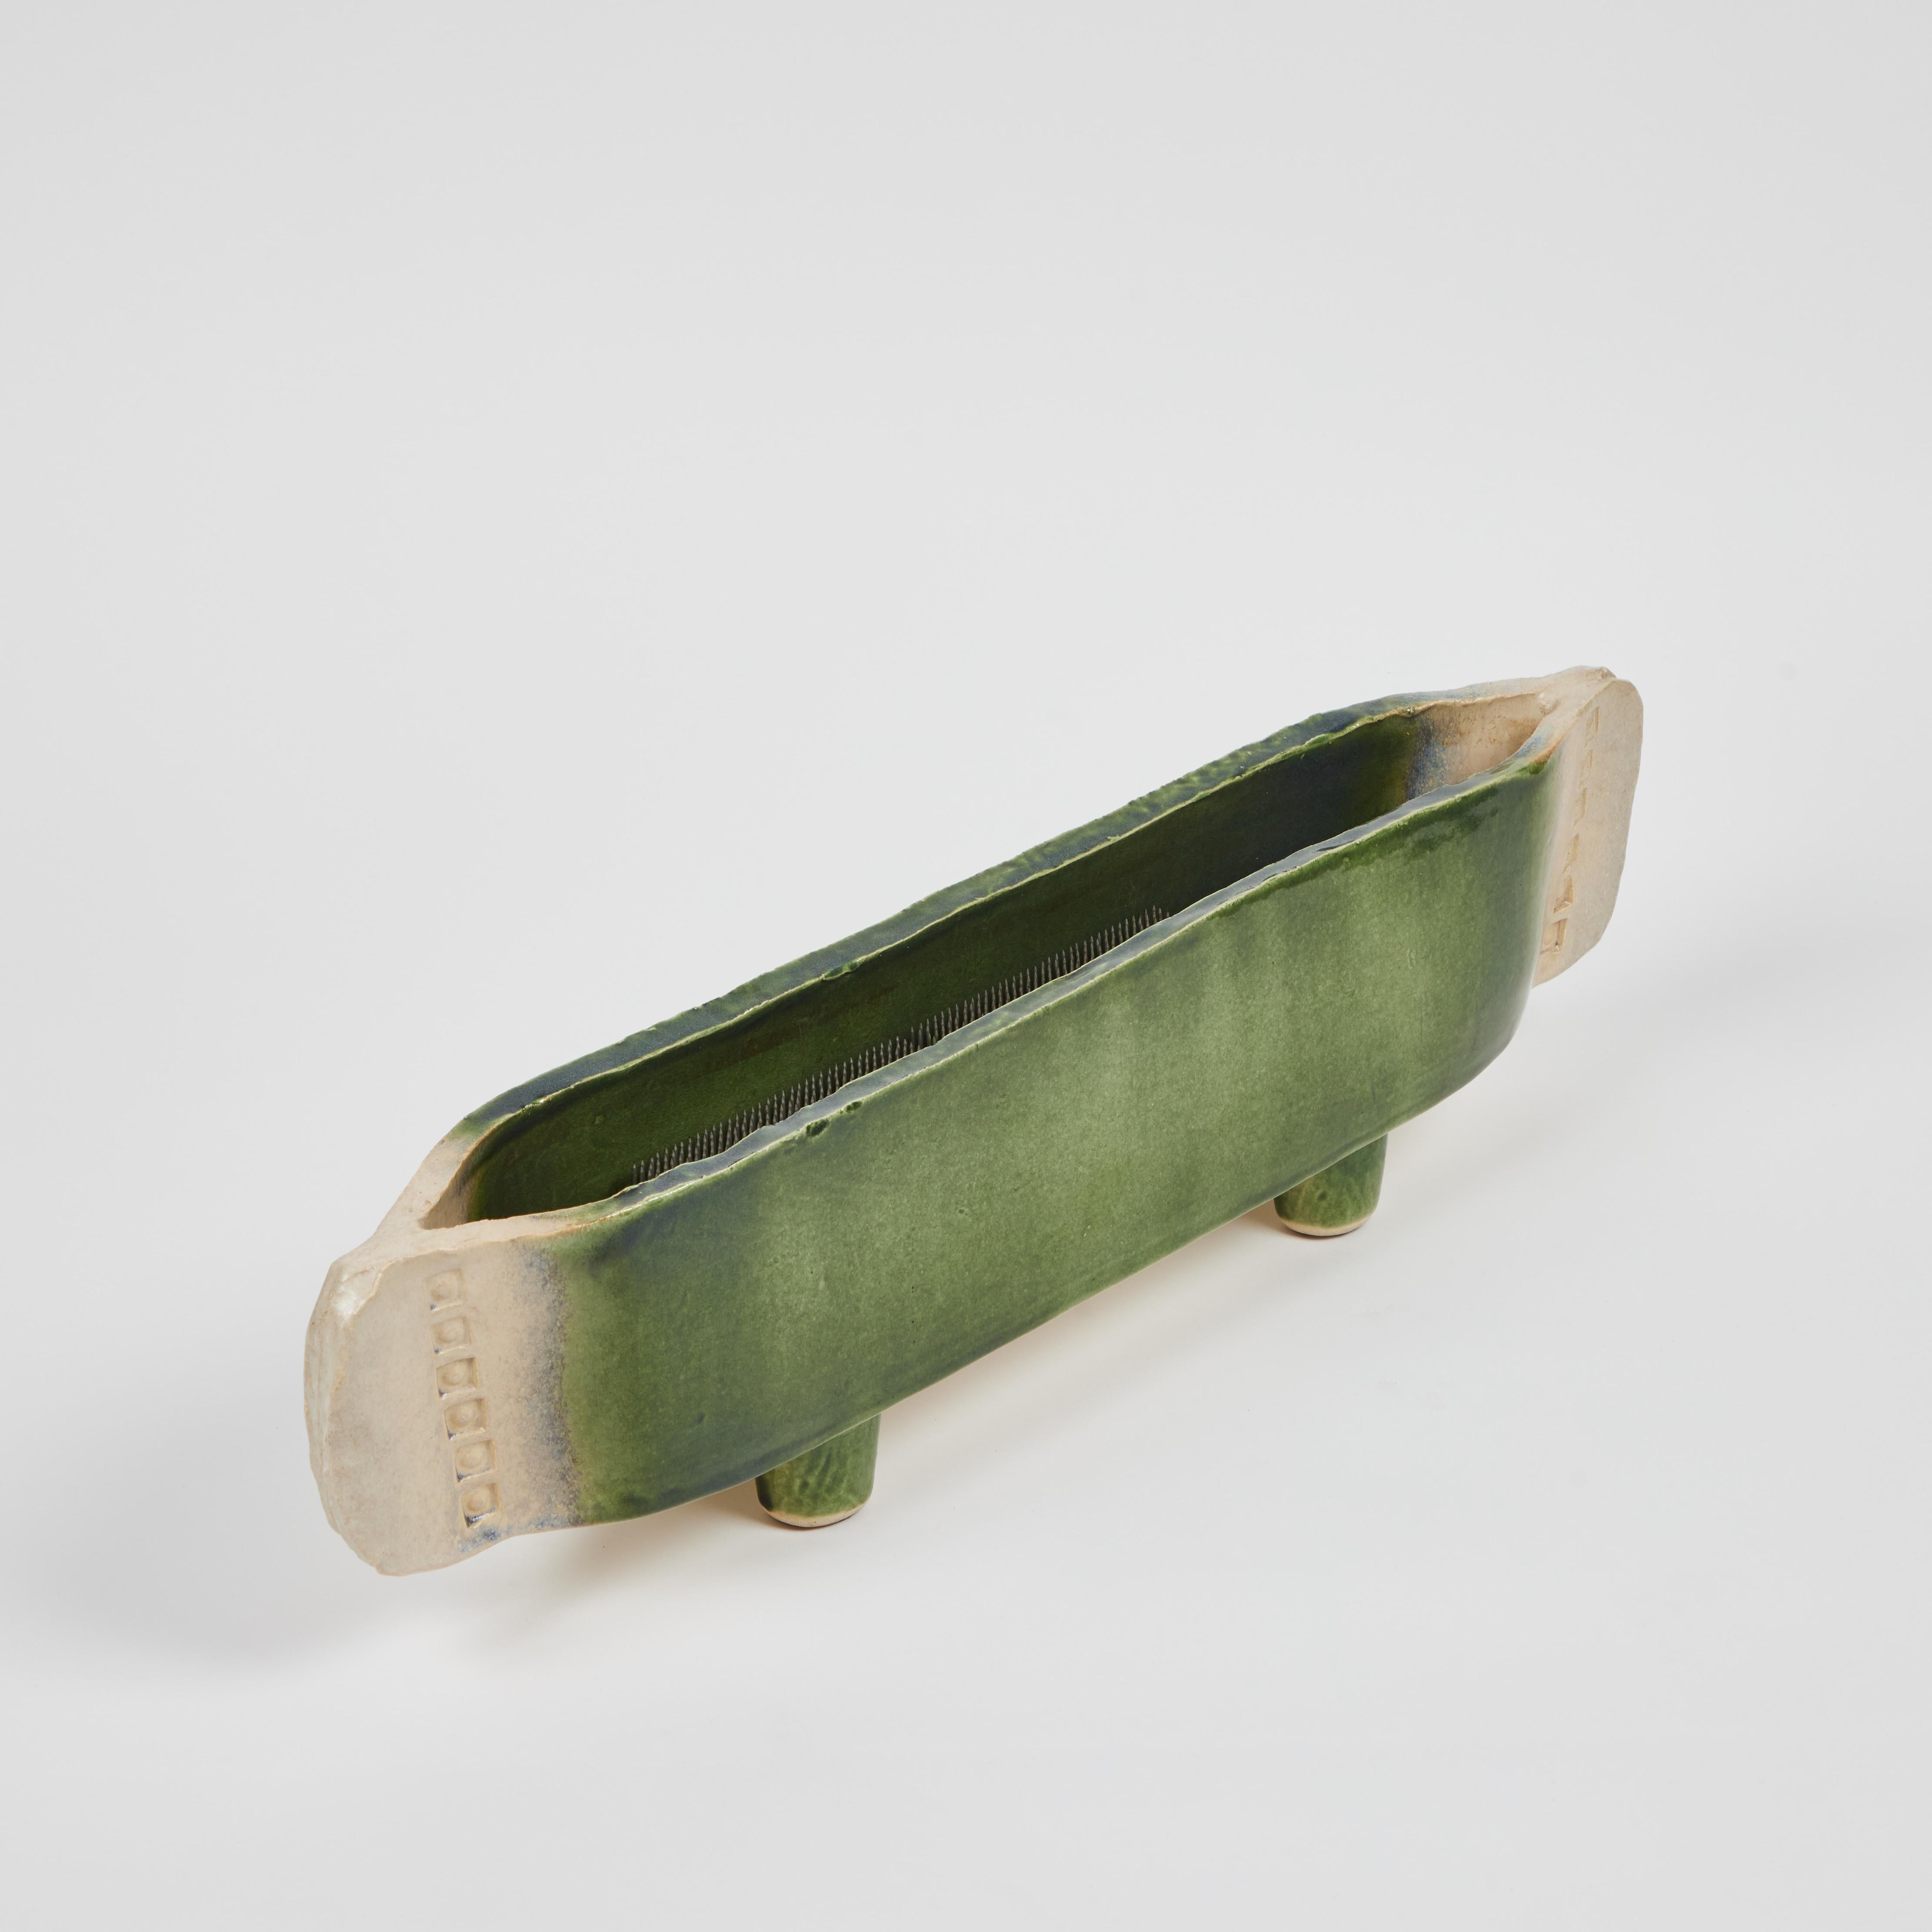 Wir denken, dass dieses antike Ikebana-Keramikgefäß (um 1920) hervorragend ist! Es ist handgefertigt aus ausgewalzten Tonplatten und in eine fantastische lange und schöne Fußgefäß mit Stempel Akzentuierung an den Enden, kommt mit dem ursprünglichen